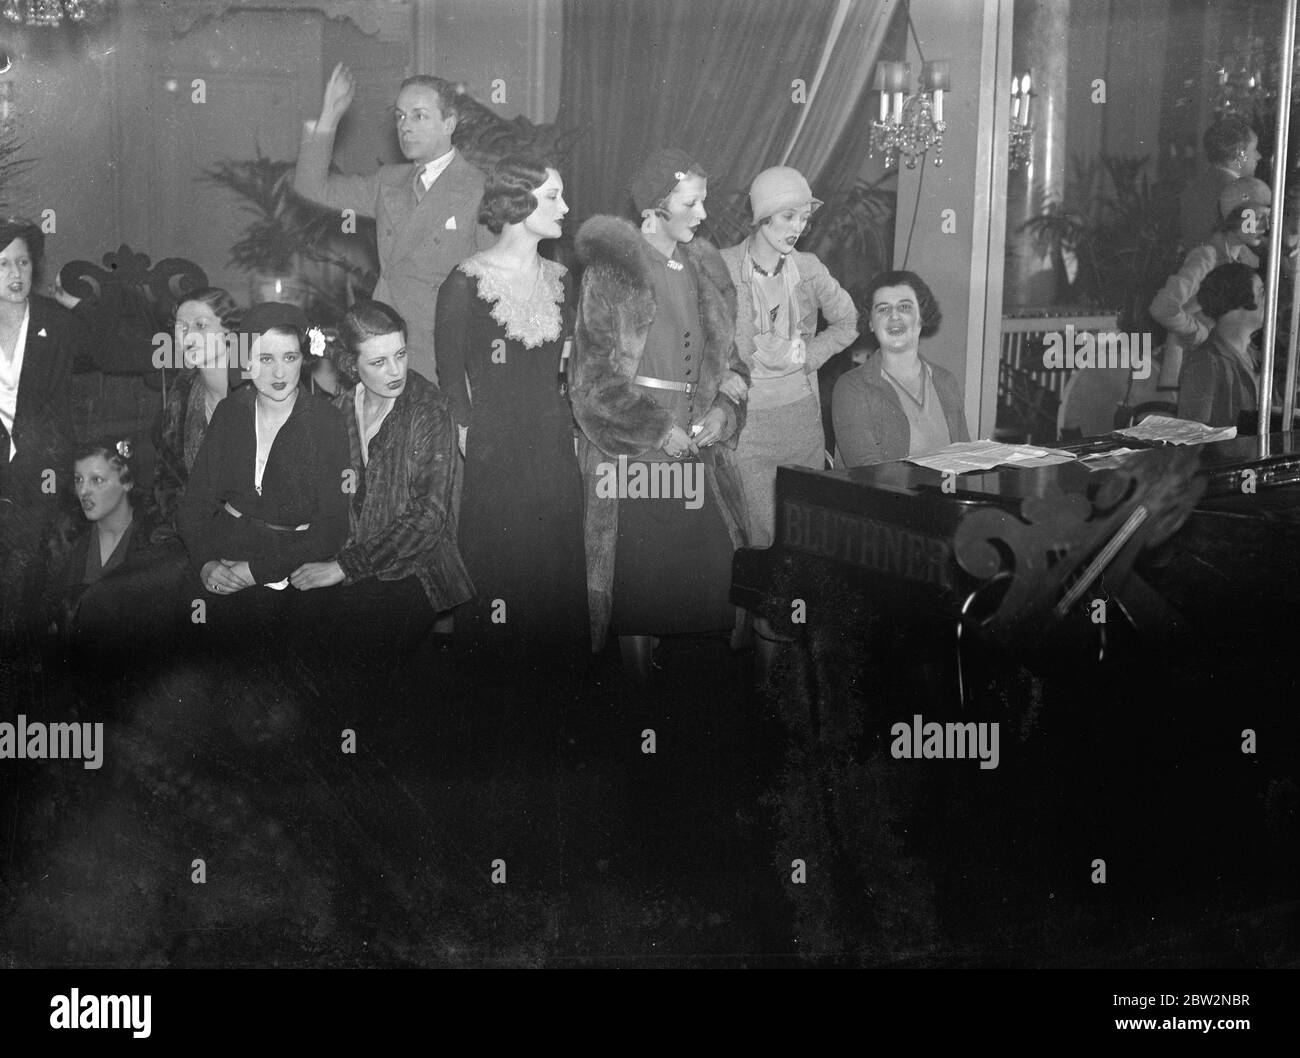 Synkopierte Mannequins erscheinen zum ersten Mal in London Kleid Display. Zum ersten Mal tanzende Mannequins wurden in London gesehen, als sie bei einer Kleiderparade auftraten, die von führenden Modehäusern im Ciro 's Club, London organisiert wurde. Die Bewegung der Tänzer, die auch sangen, ermöglichte die Kleider zu einem größeren Vorteil gesehen werden. Singende Schaufensterpuppen auf der Ausstellung. 16 Februar 1932 Stockfoto